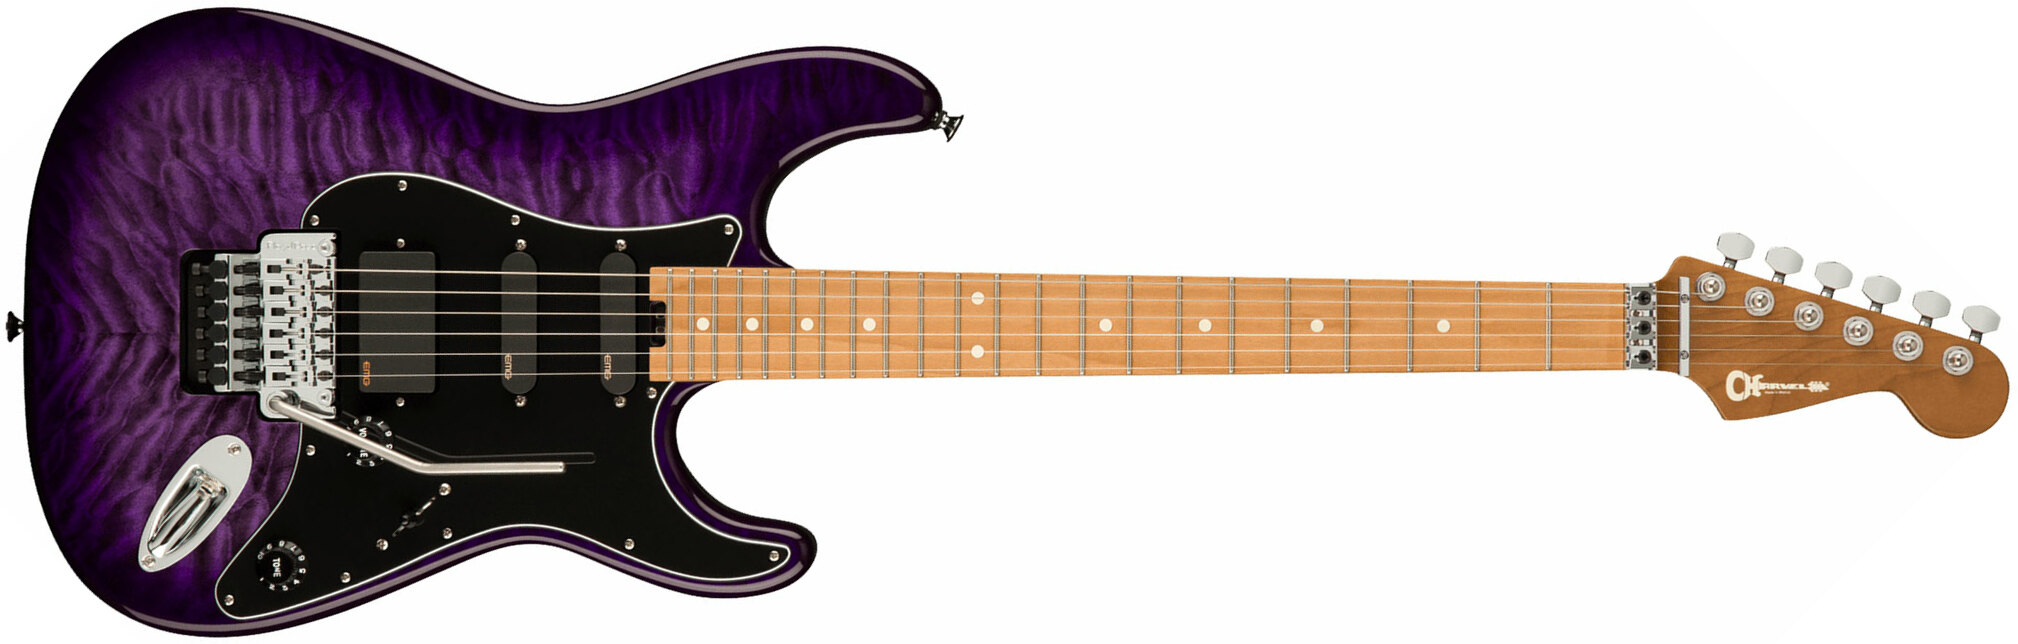 Charvel Marco Sfogli So Cal Style 1 Pro Mod Signature Hss Emg Fr Mn - Transparent Purple Burst - Guitare Électrique Signature - Main picture